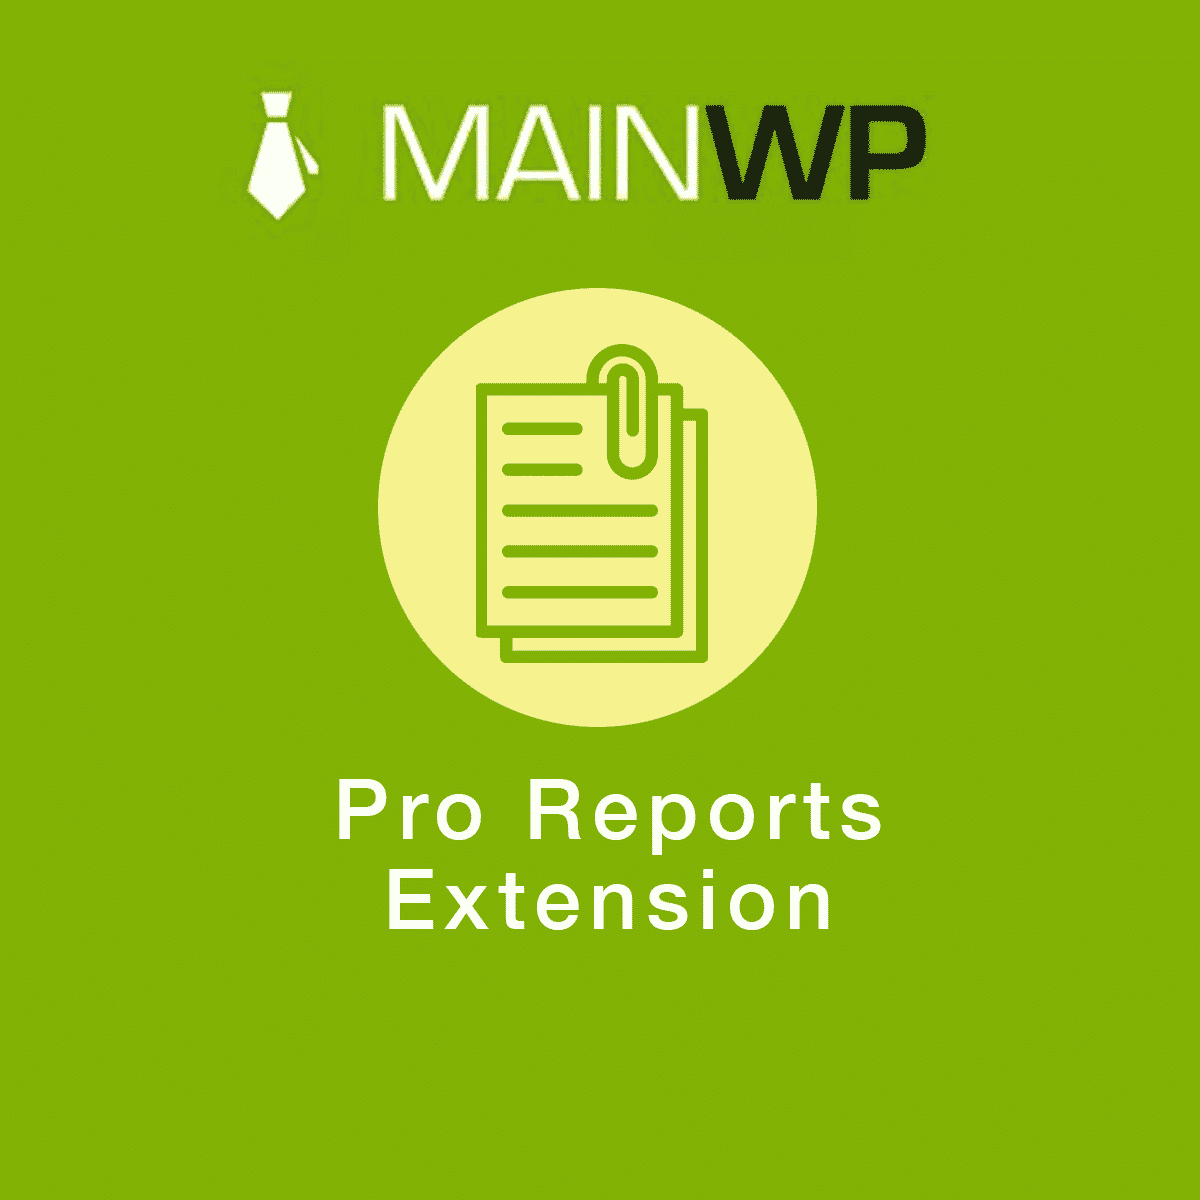 دانلود افزونه وردپرس MainWP Pro Reports